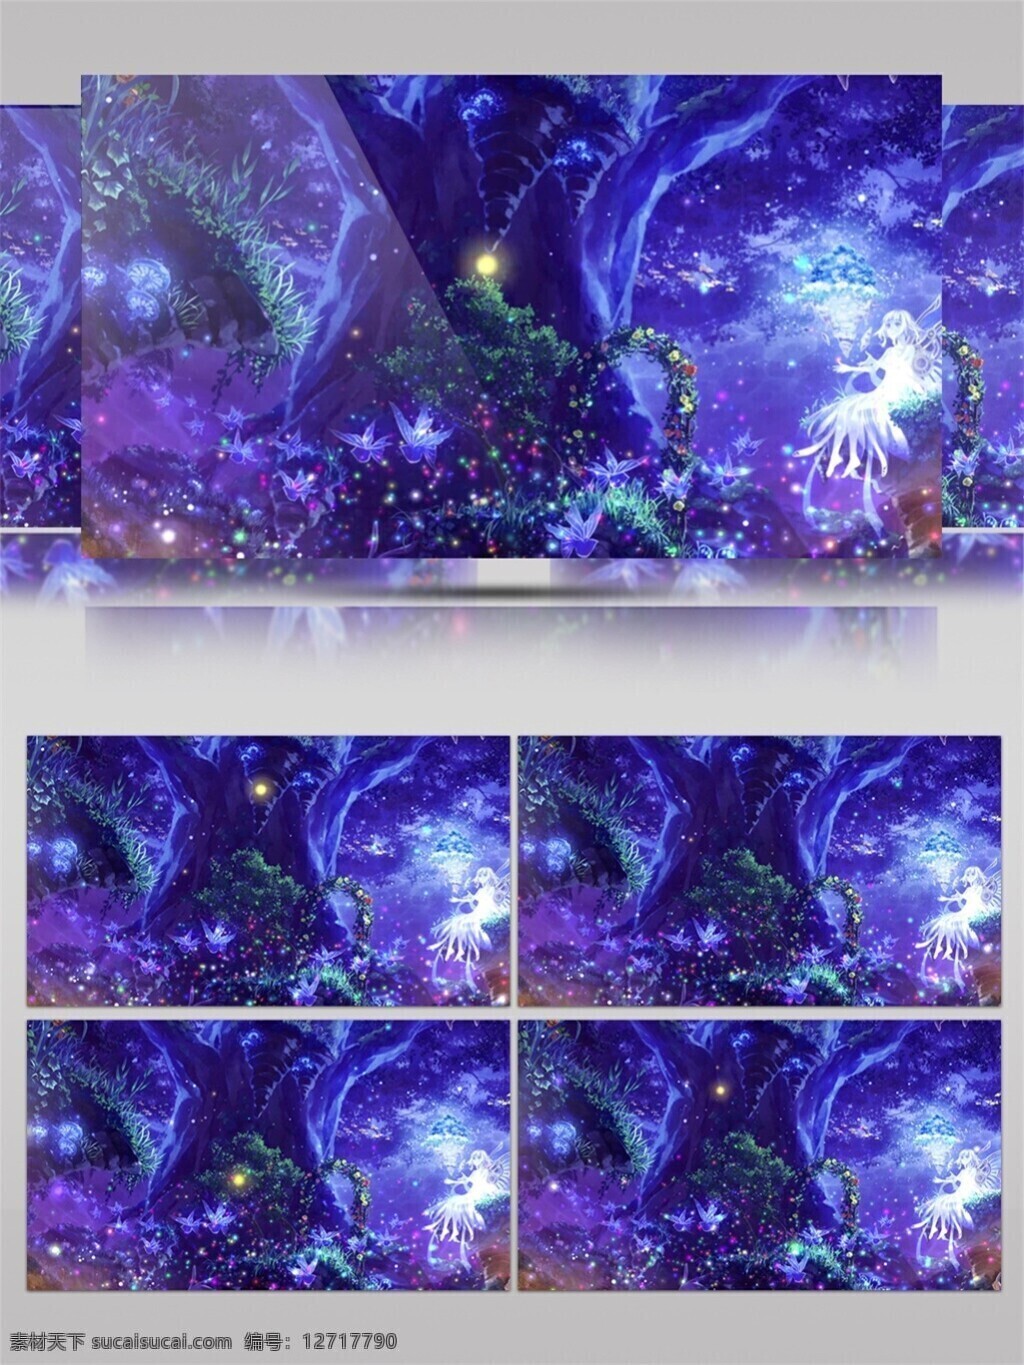 梦幻 紫色 星空 视频 迷幻星空 紫色烟云 晚会舞台背景 酒吧舞台 3d视频素材 梅子色星团